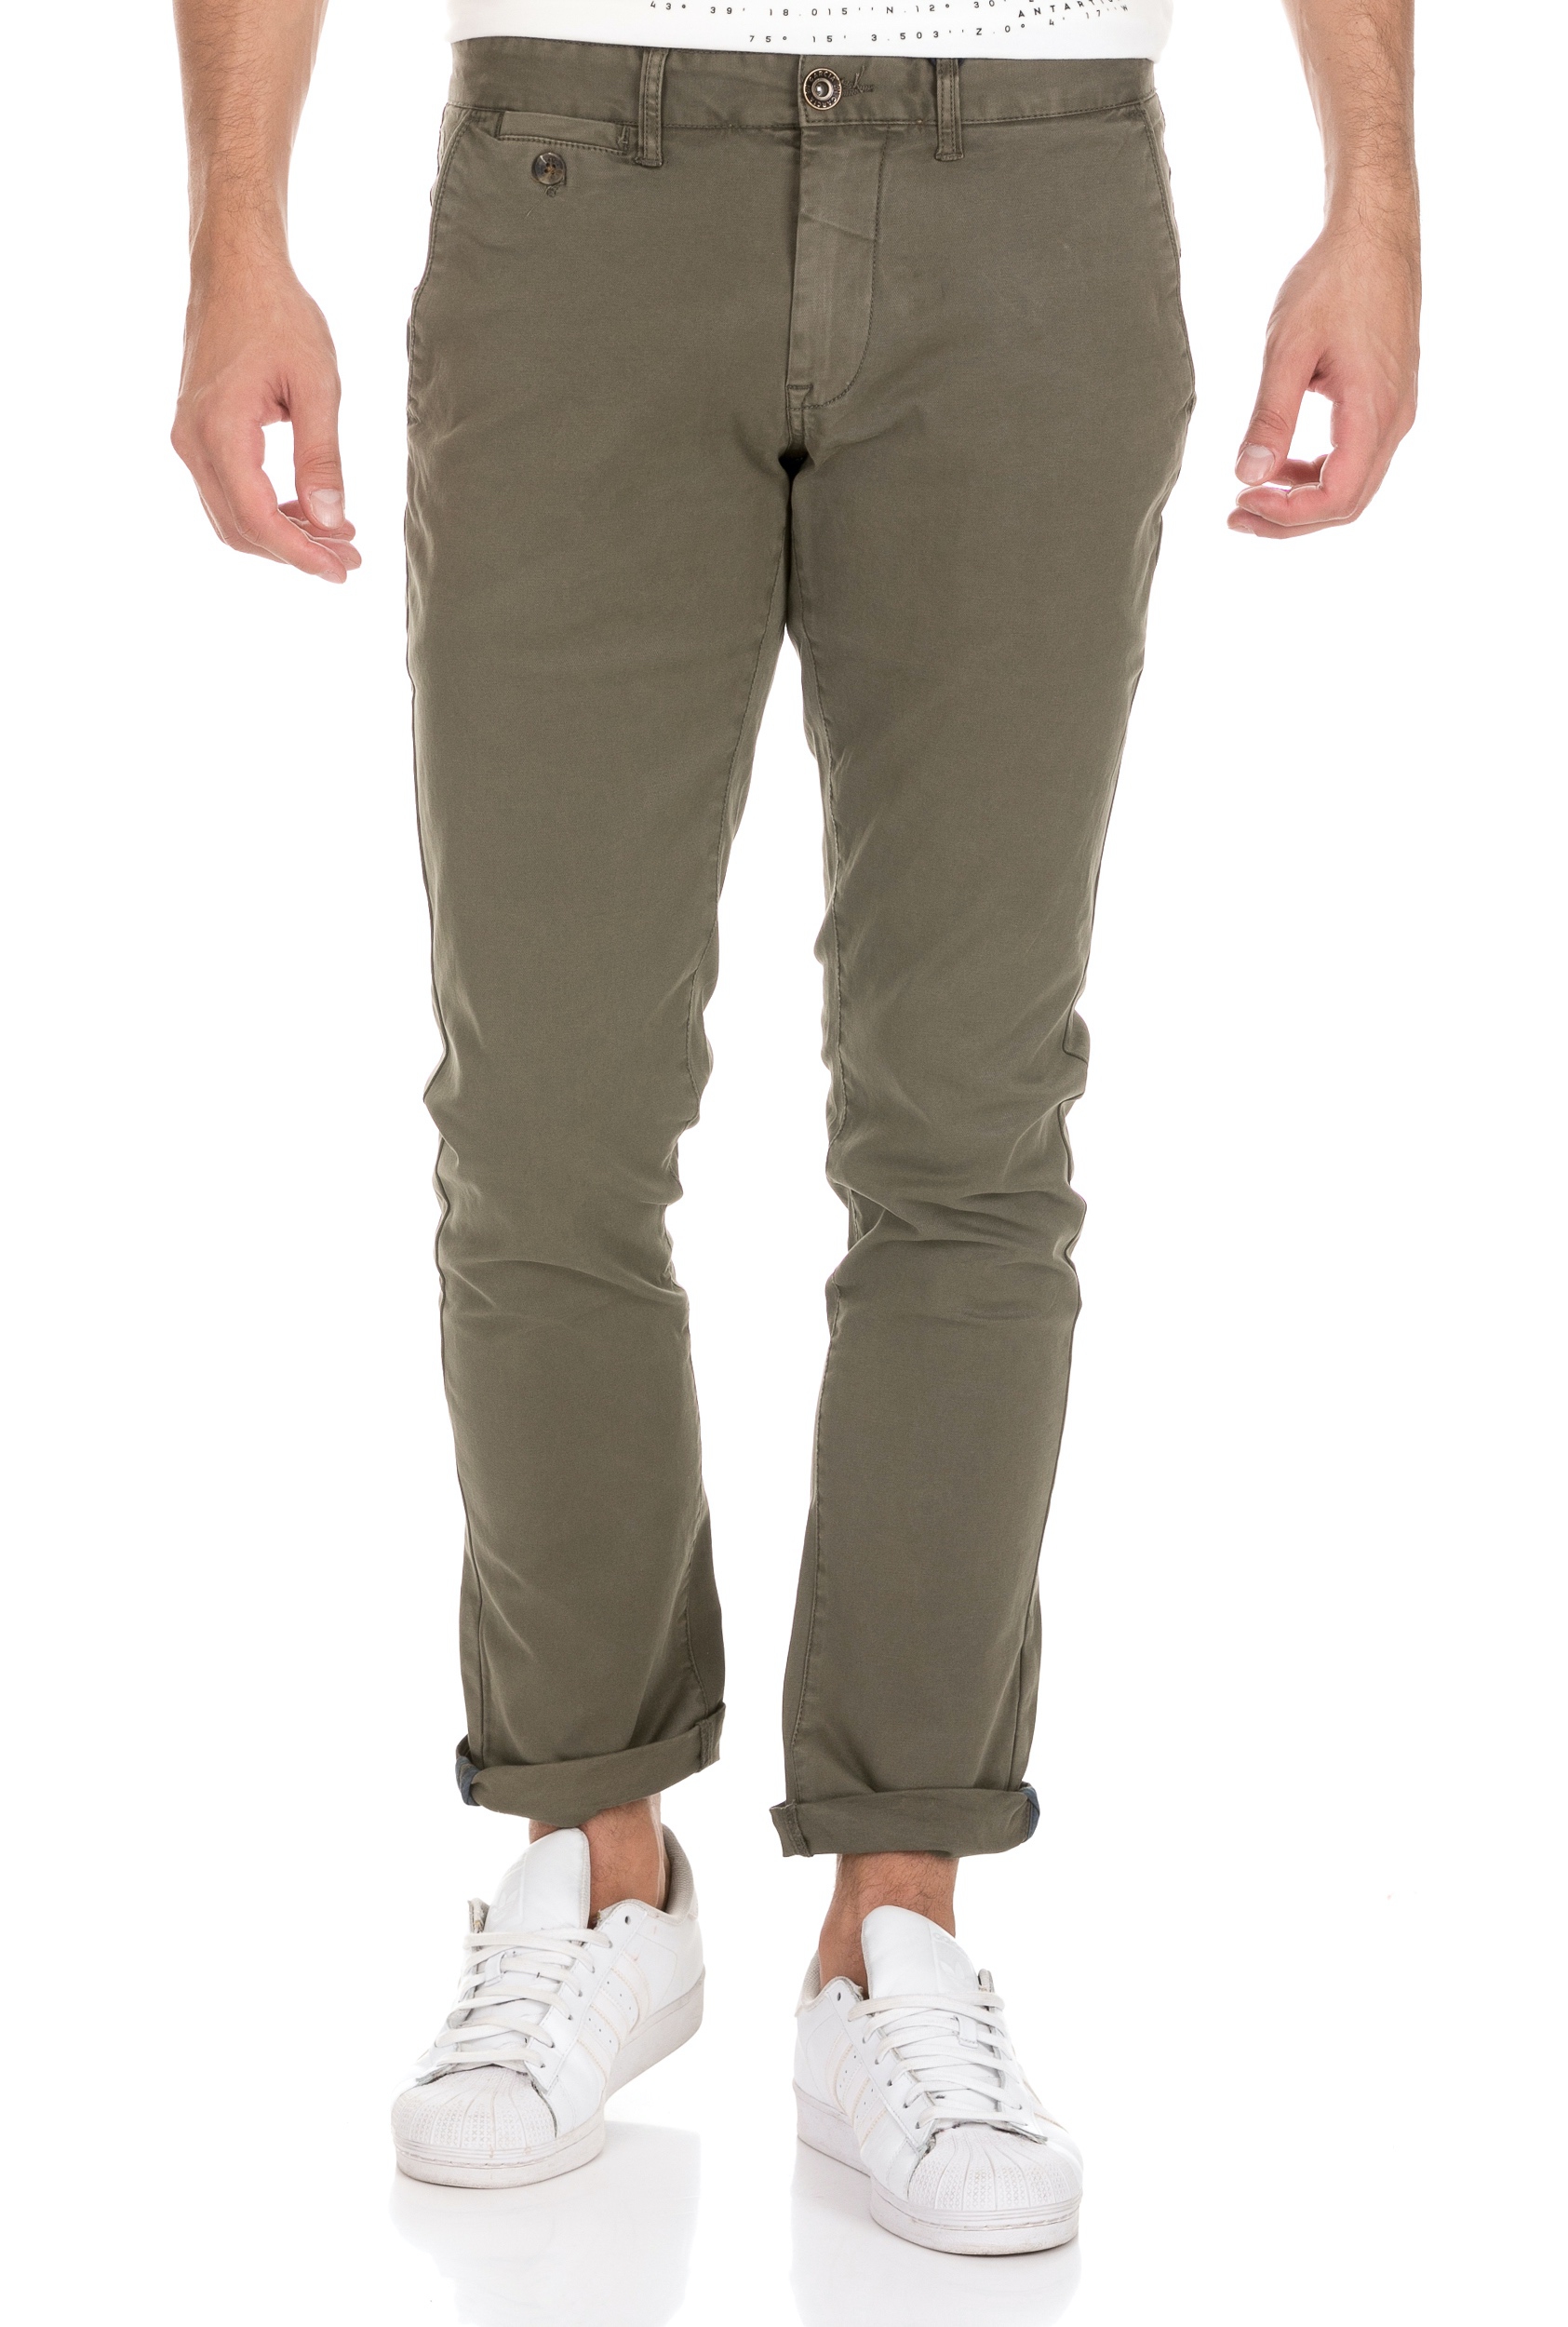 Ανδρικά/Ρούχα/Παντελόνια/Chinos GARCIA JEANS - Ανδρικό παντελόνι chino GARCIA JEANS SAVIO πράσινο